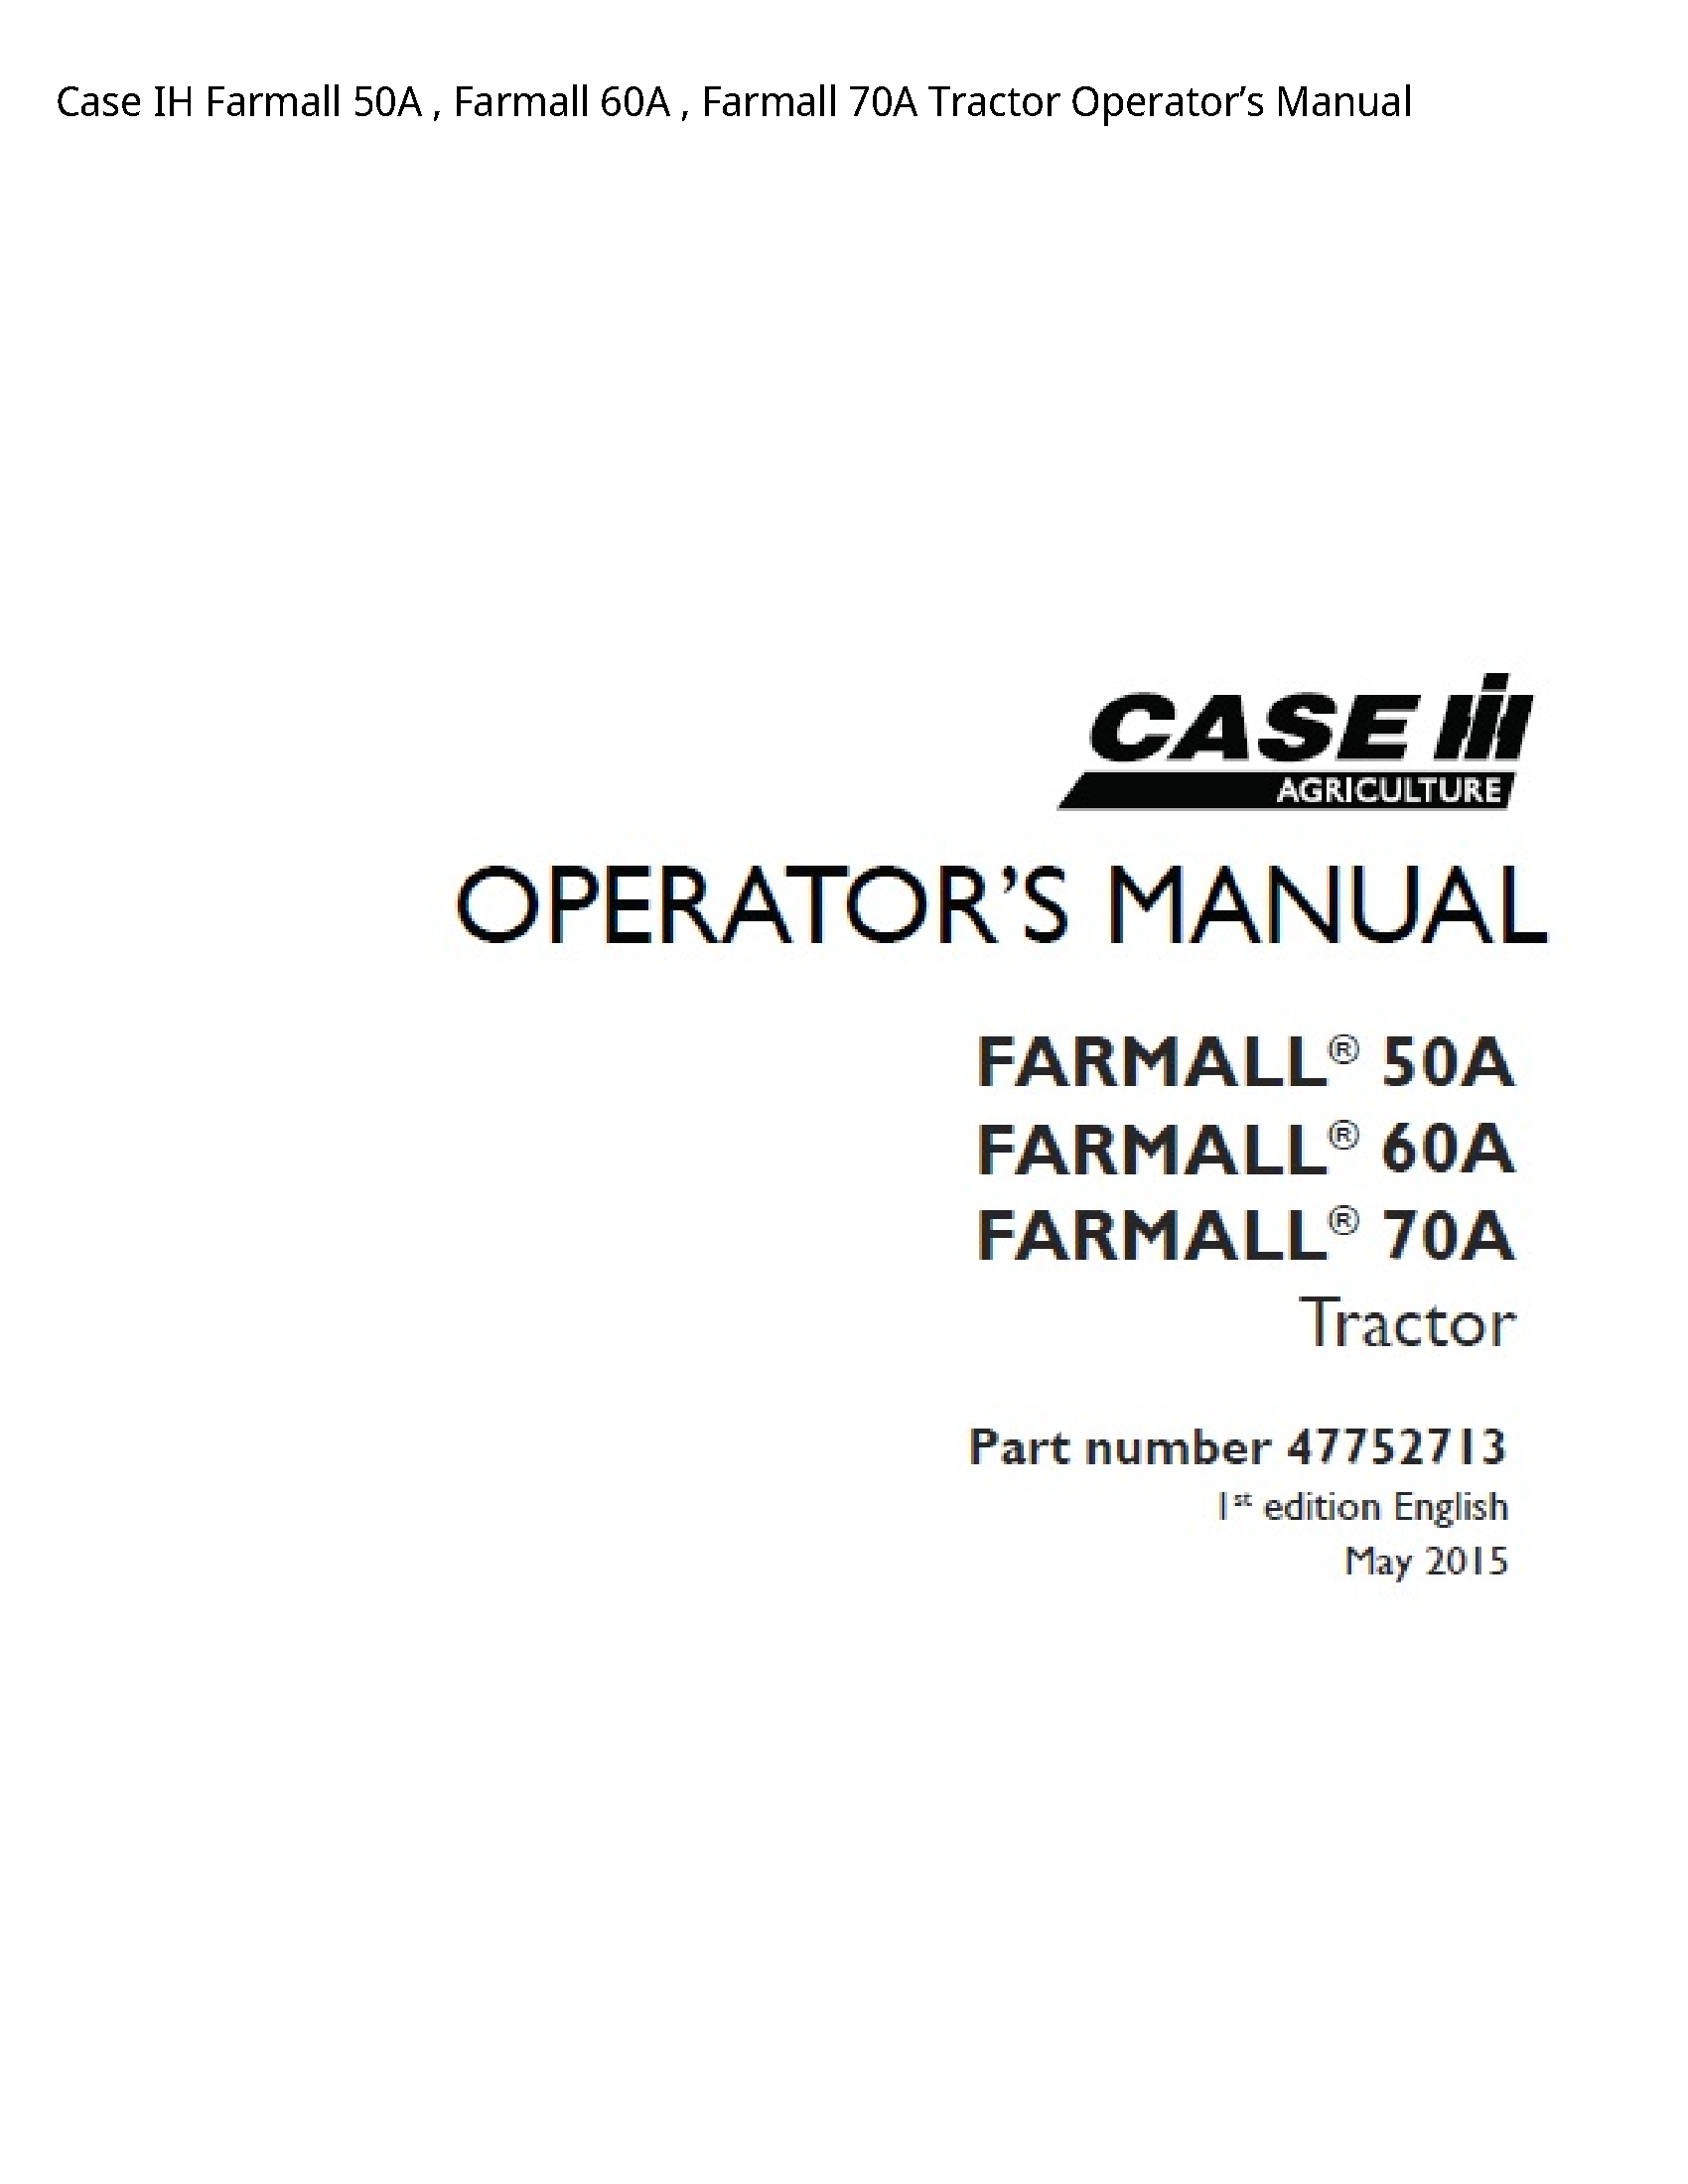 Case/Case IH 50A IH Farmall Farmall Farmall Tractor Operator’s manual